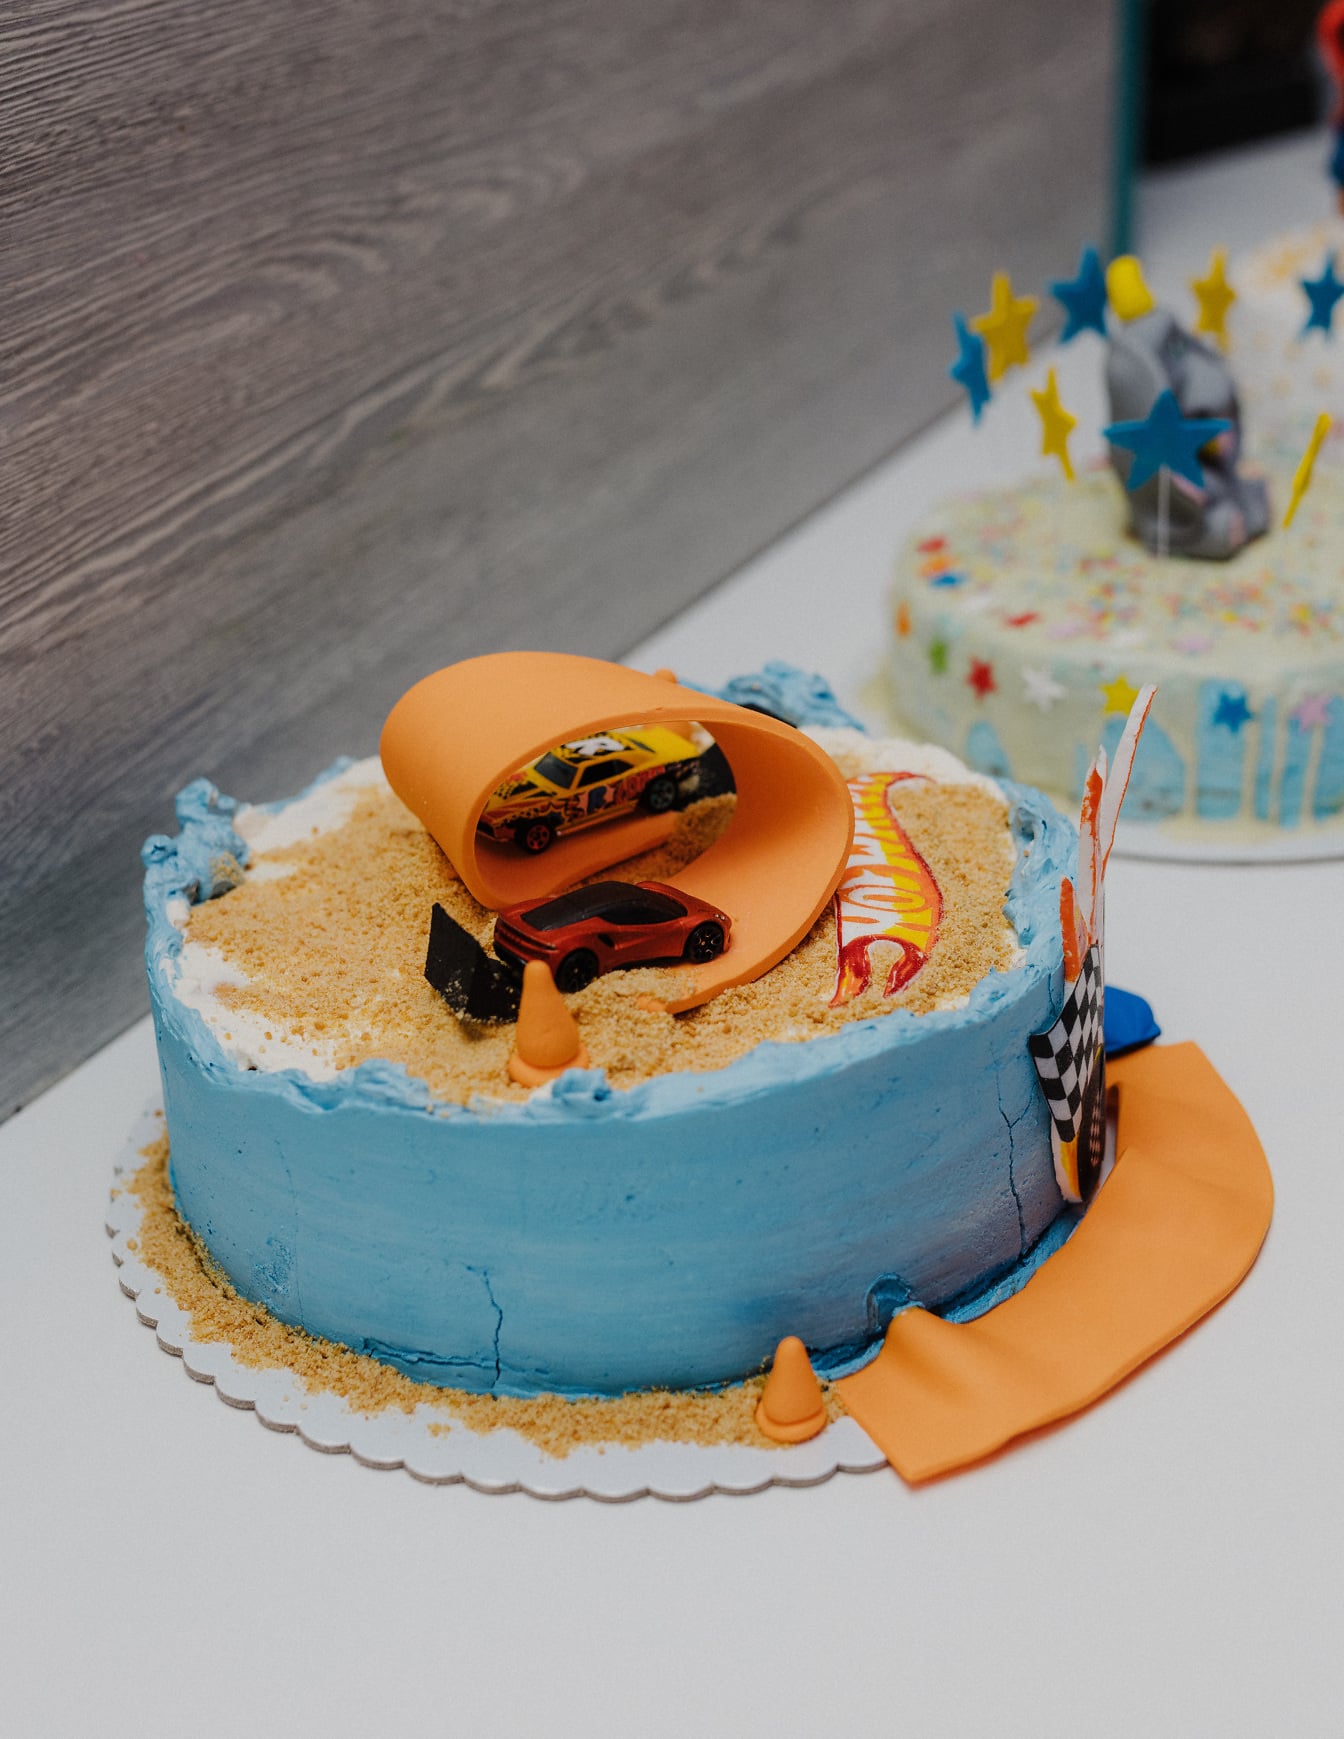 Rođendanska zabava s rođendanskim caceom s igračkom automobila na trkaćoj stazi